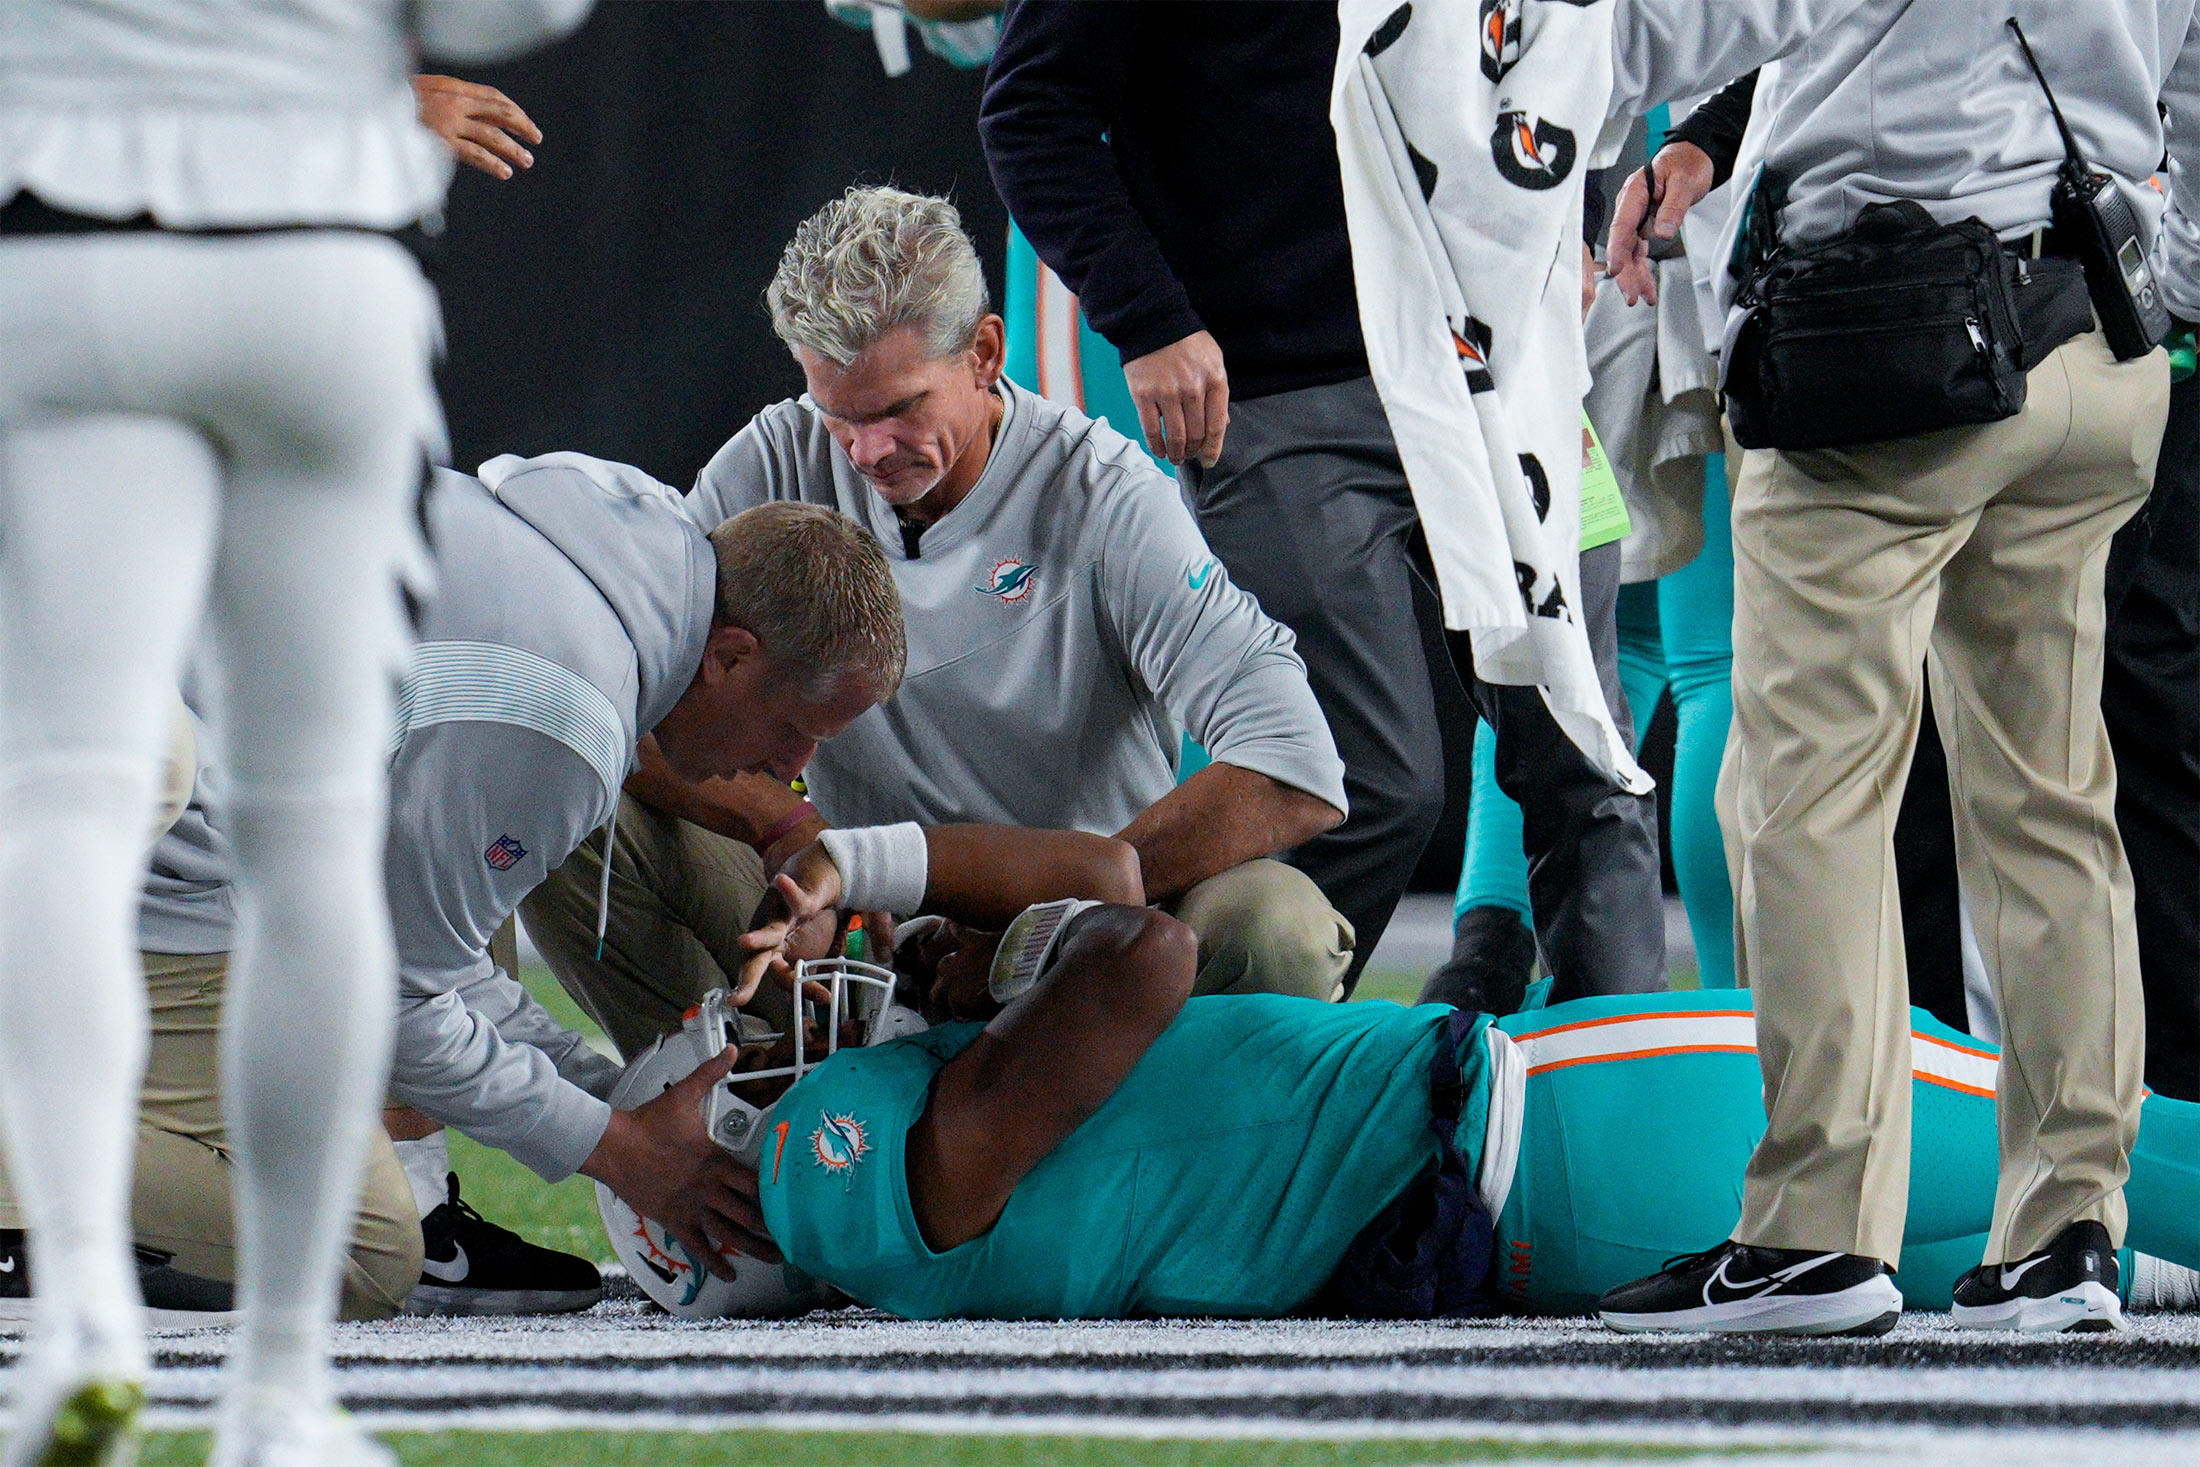 NFL Concussion Protocol After Miami Dolphins Quarterback Tua